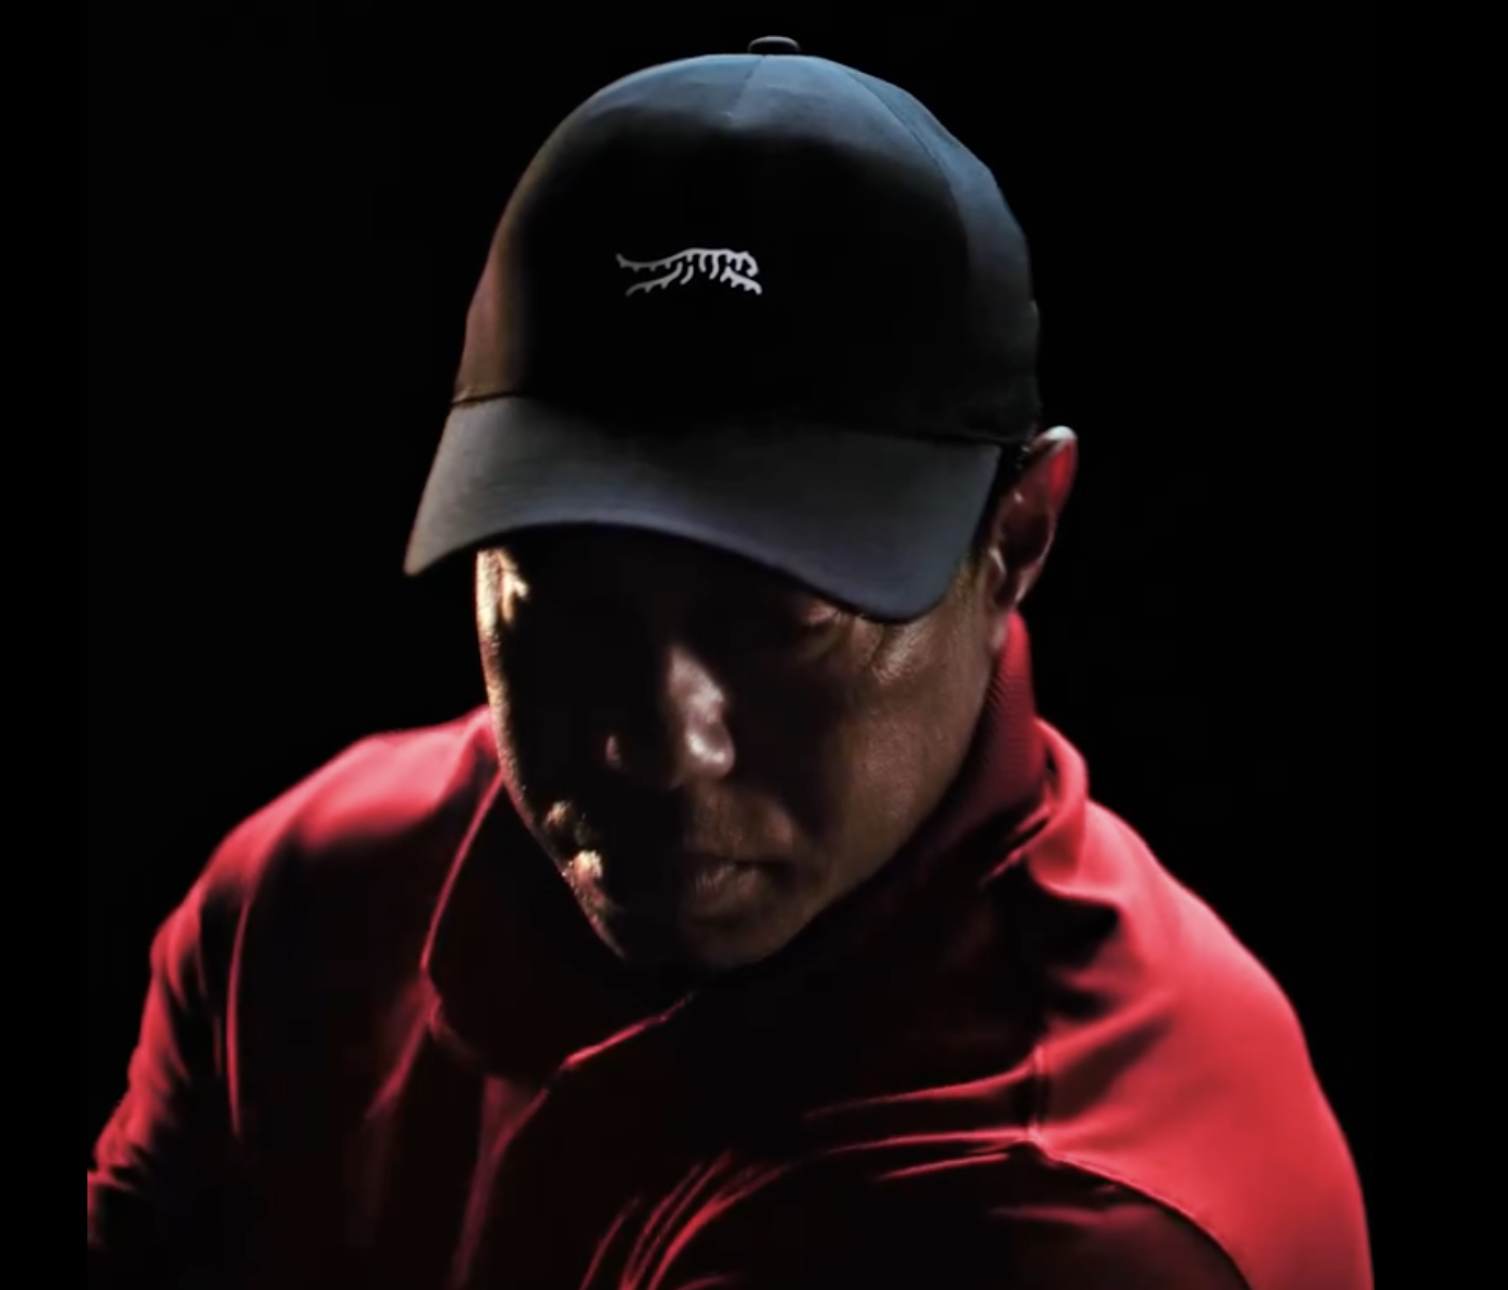 告别 Nike，“老虎伍兹”携手 TaylorMade 推出高尔夫时尚新品牌